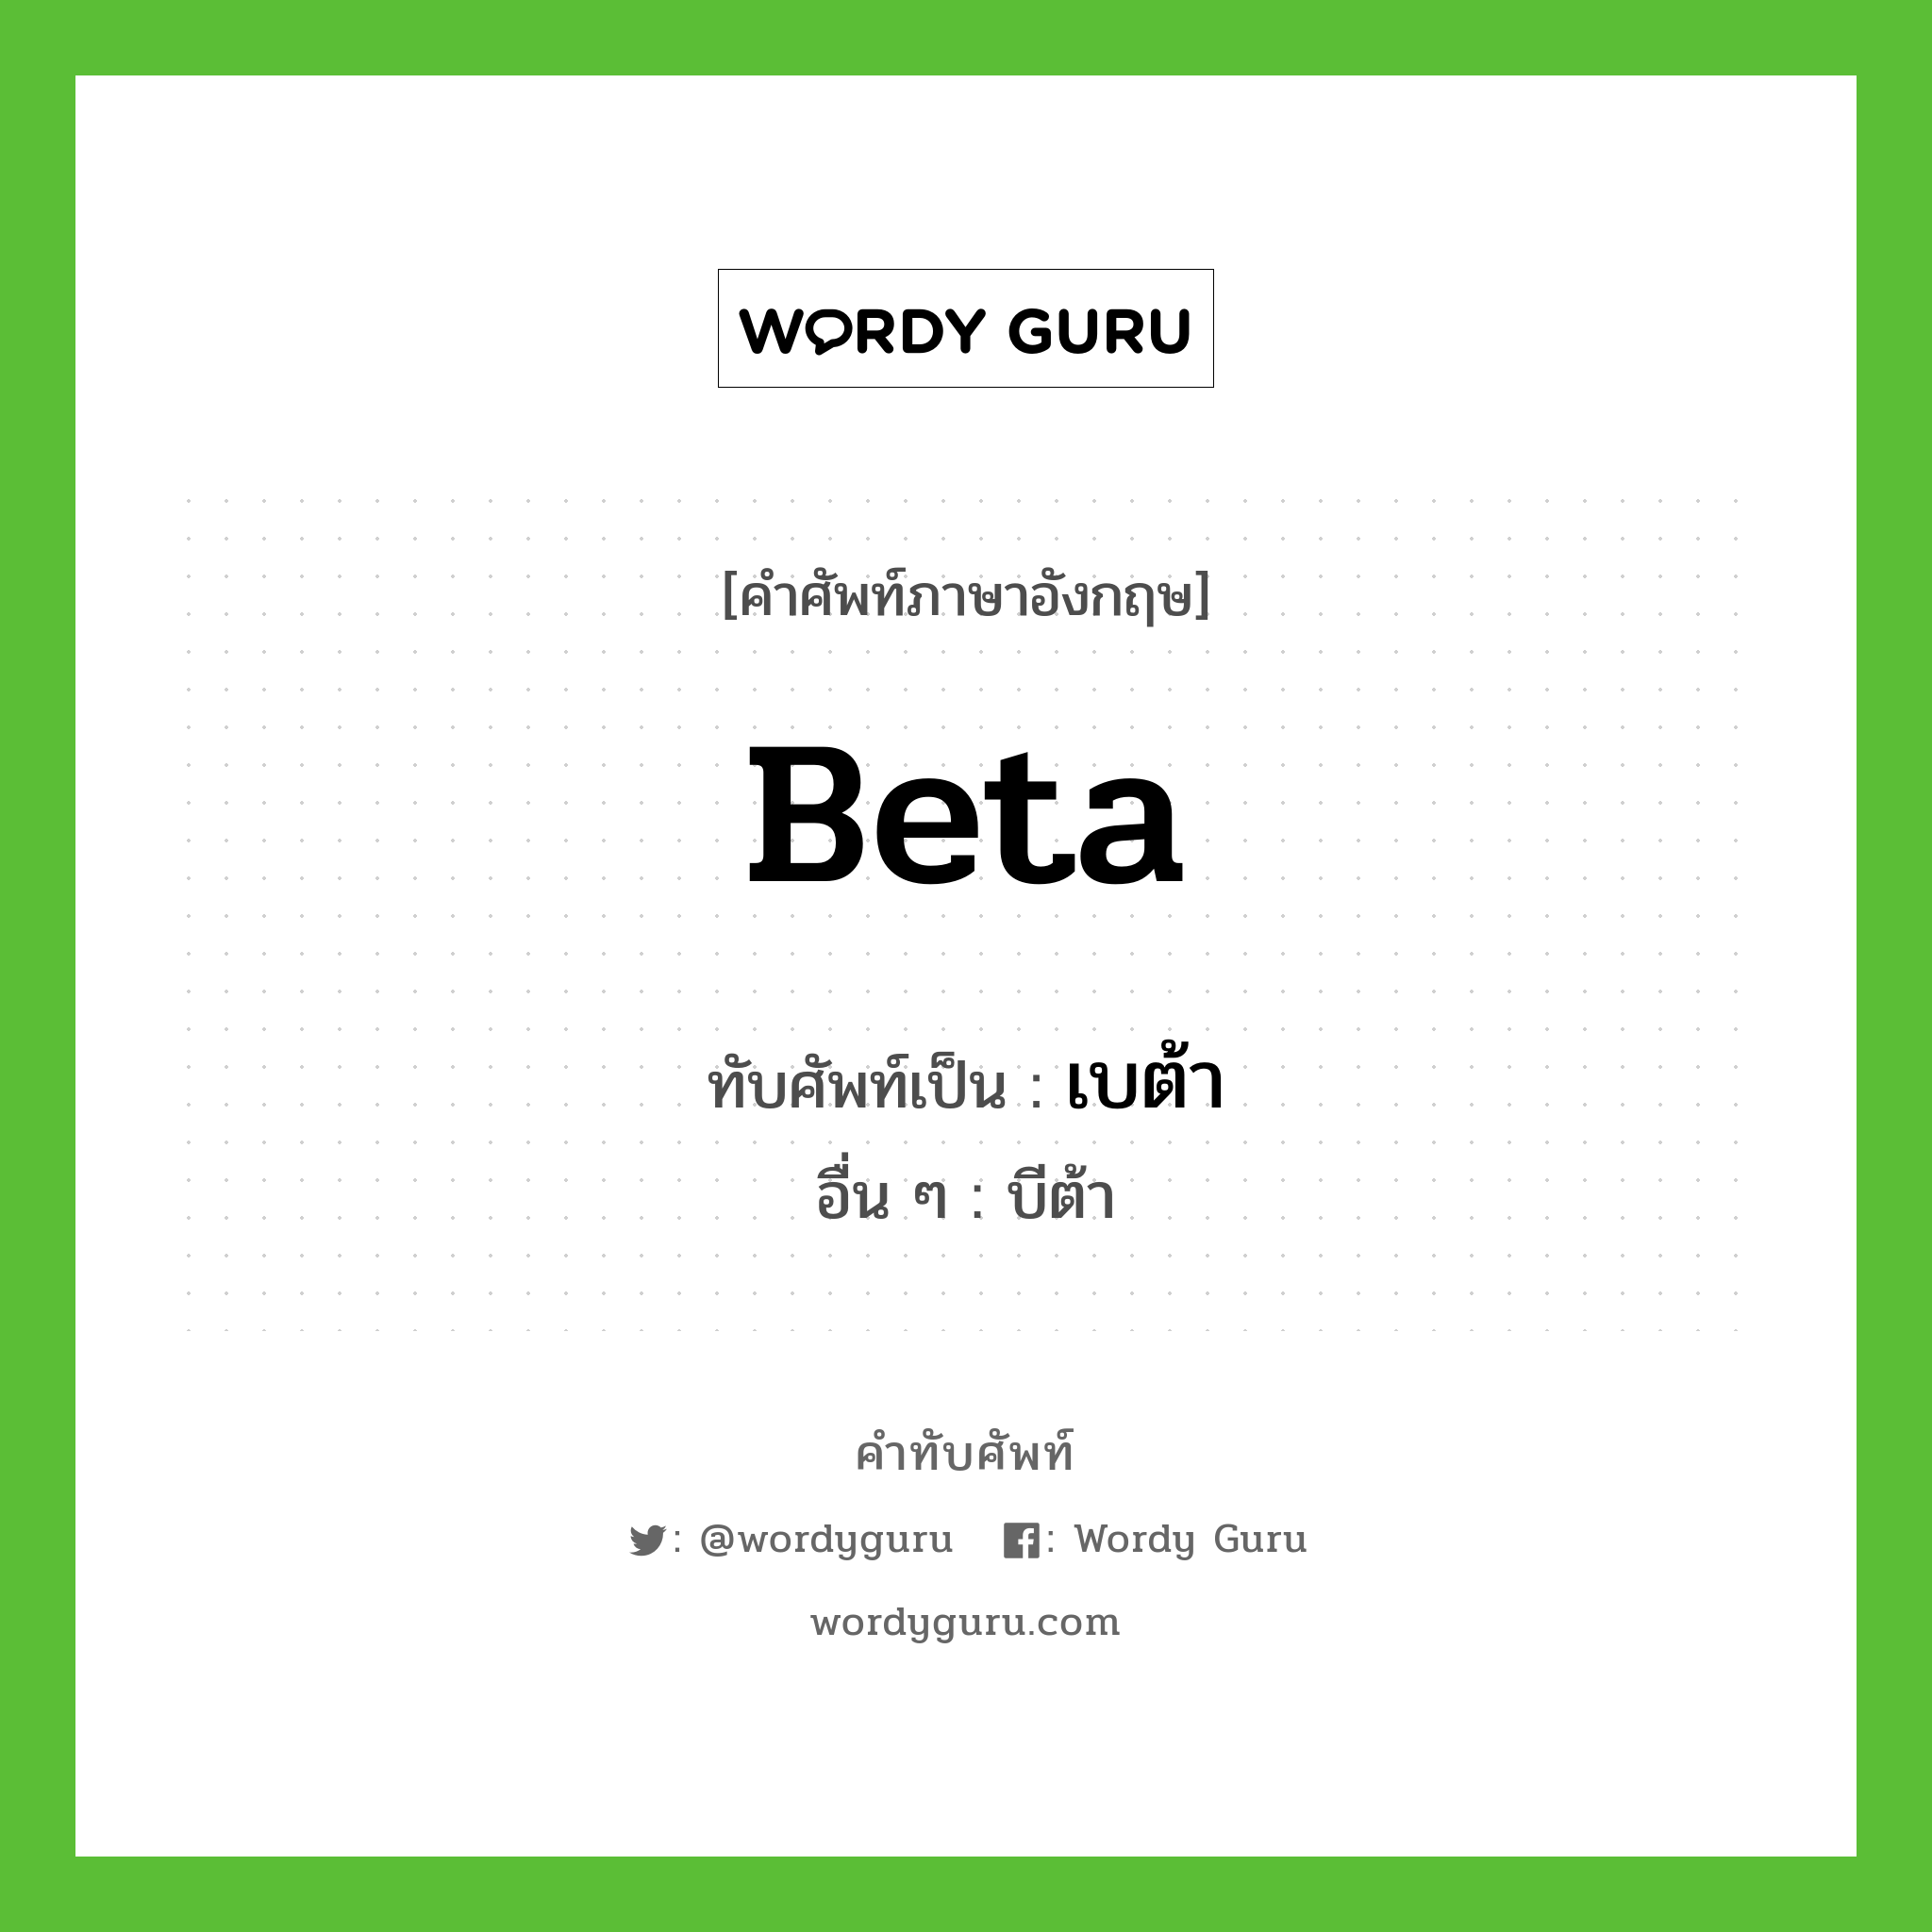 beta เขียนเป็นคำไทยว่าอะไร?, คำศัพท์ภาษาอังกฤษ beta ทับศัพท์เป็น เบต้า อื่น ๆ บีต้า